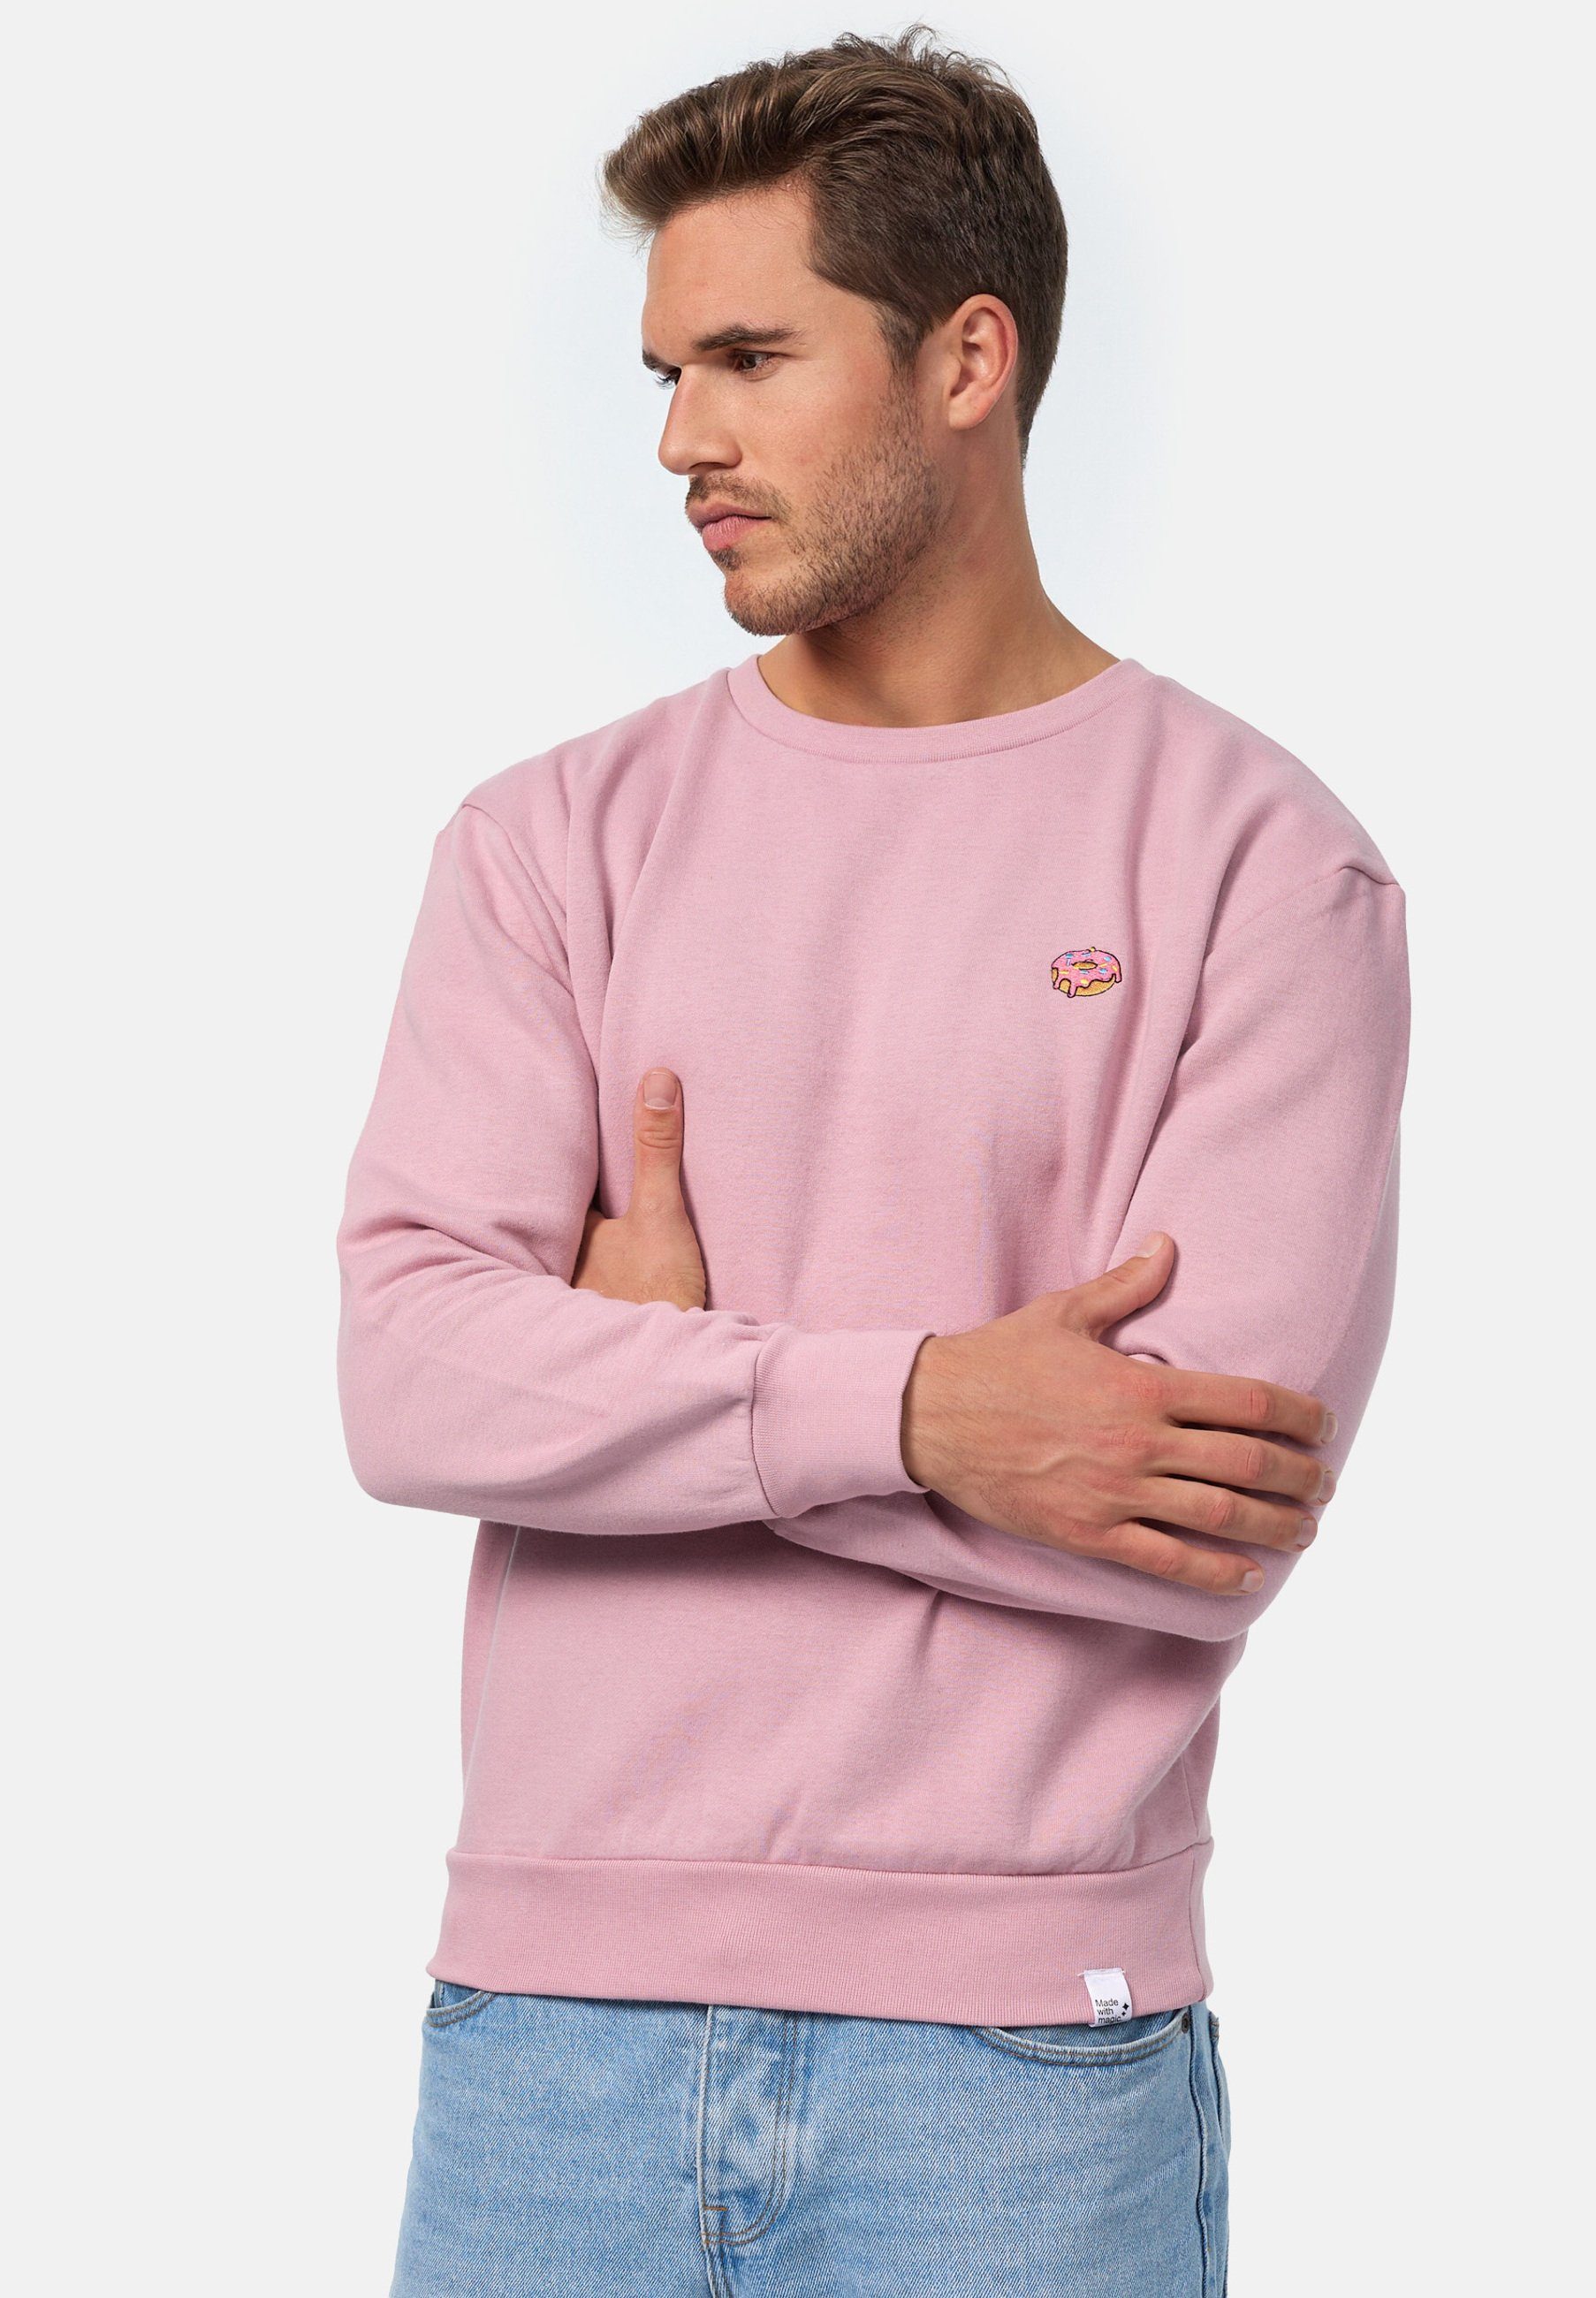 zertifizierte Bio-Baumwolle GOTS MIKON Pink Sweatshirt Donut